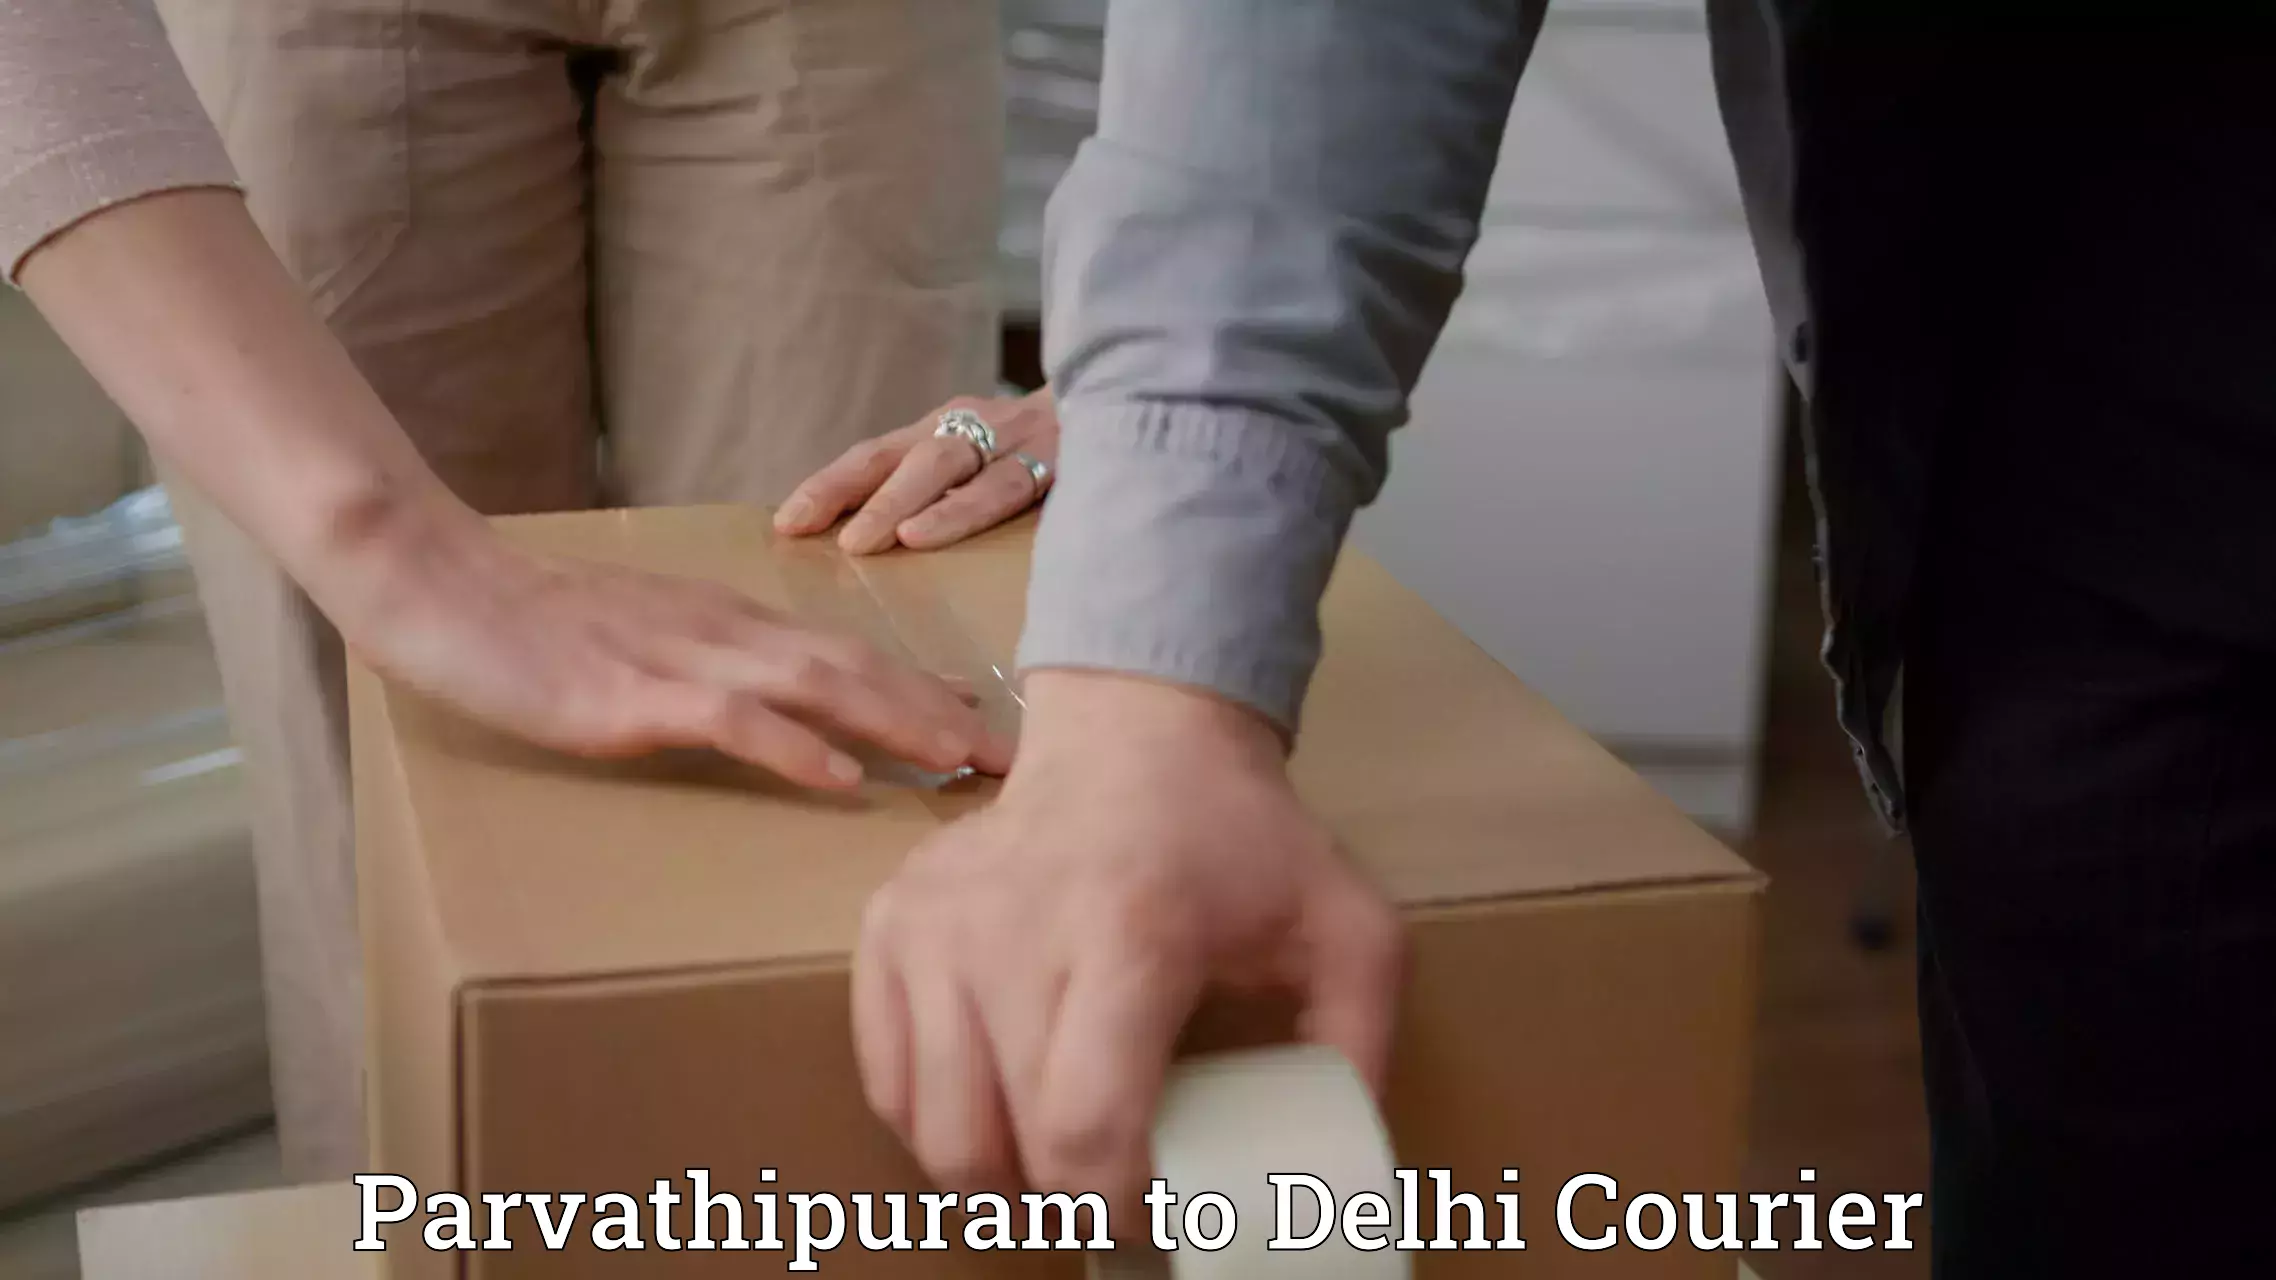 Courier service comparison Parvathipuram to NIT Delhi